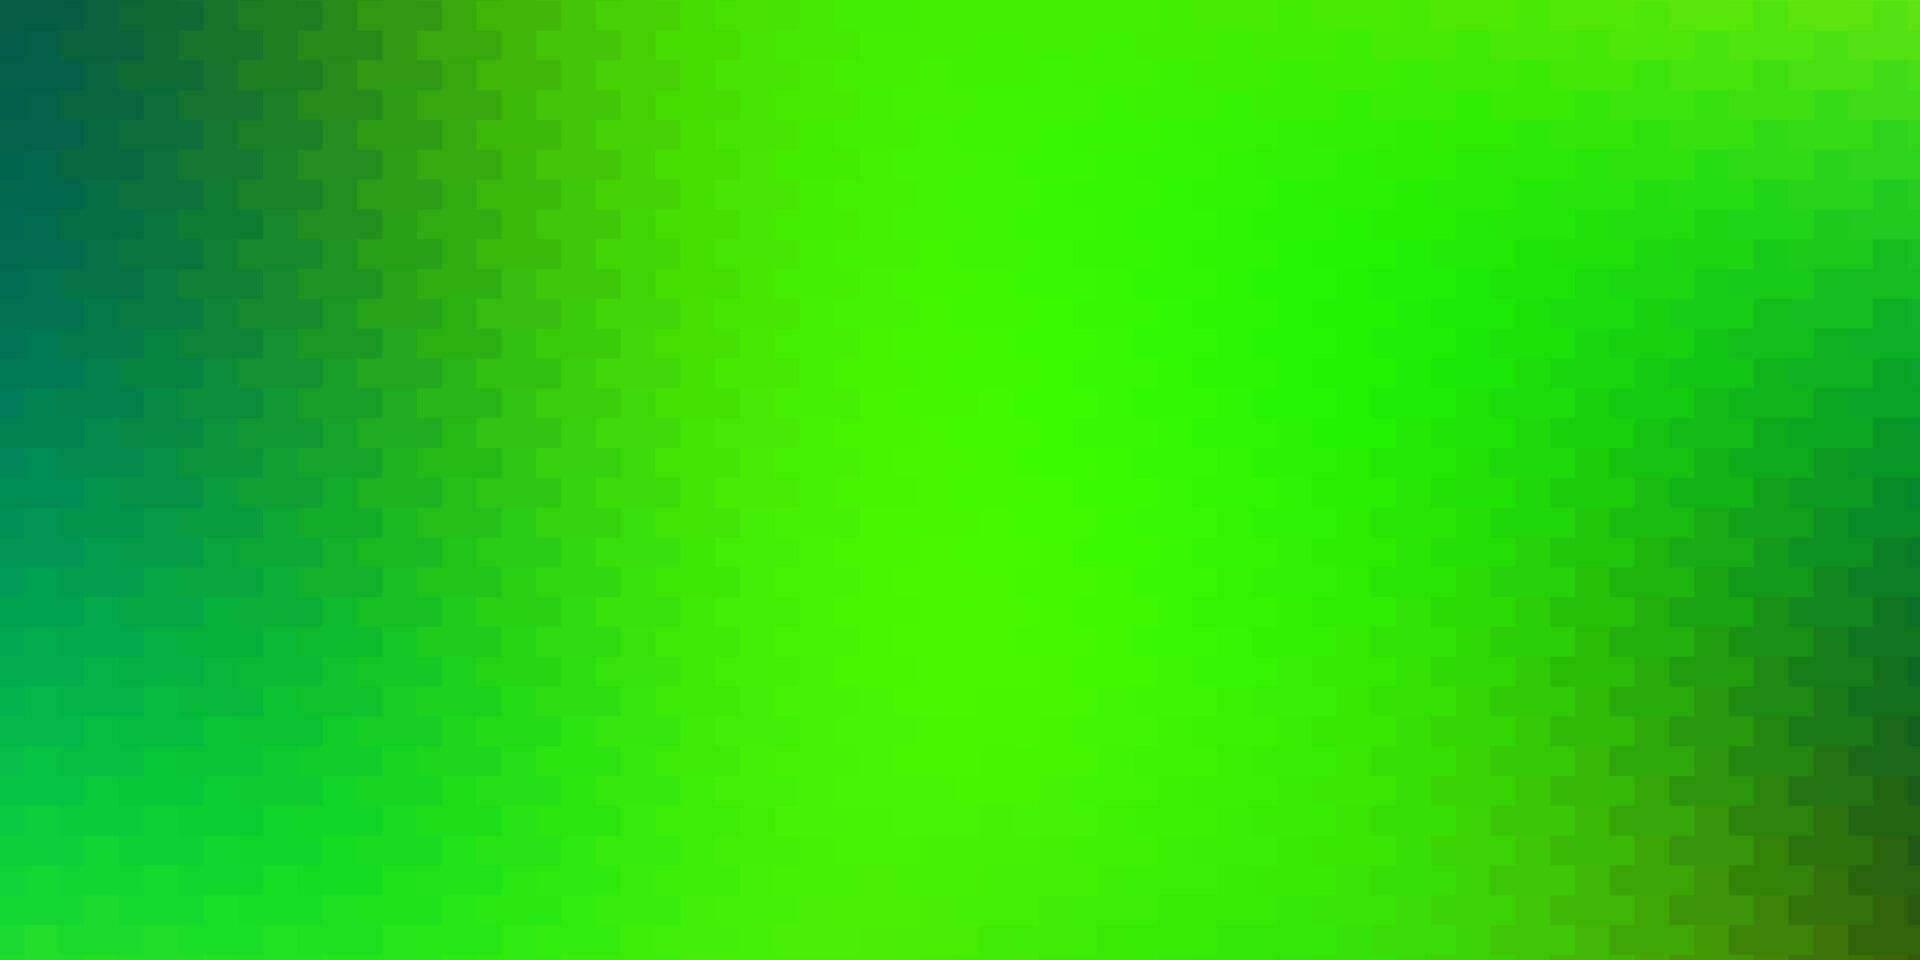 hellgrüner, gelber Vektorhintergrund mit Rechtecken. vektor